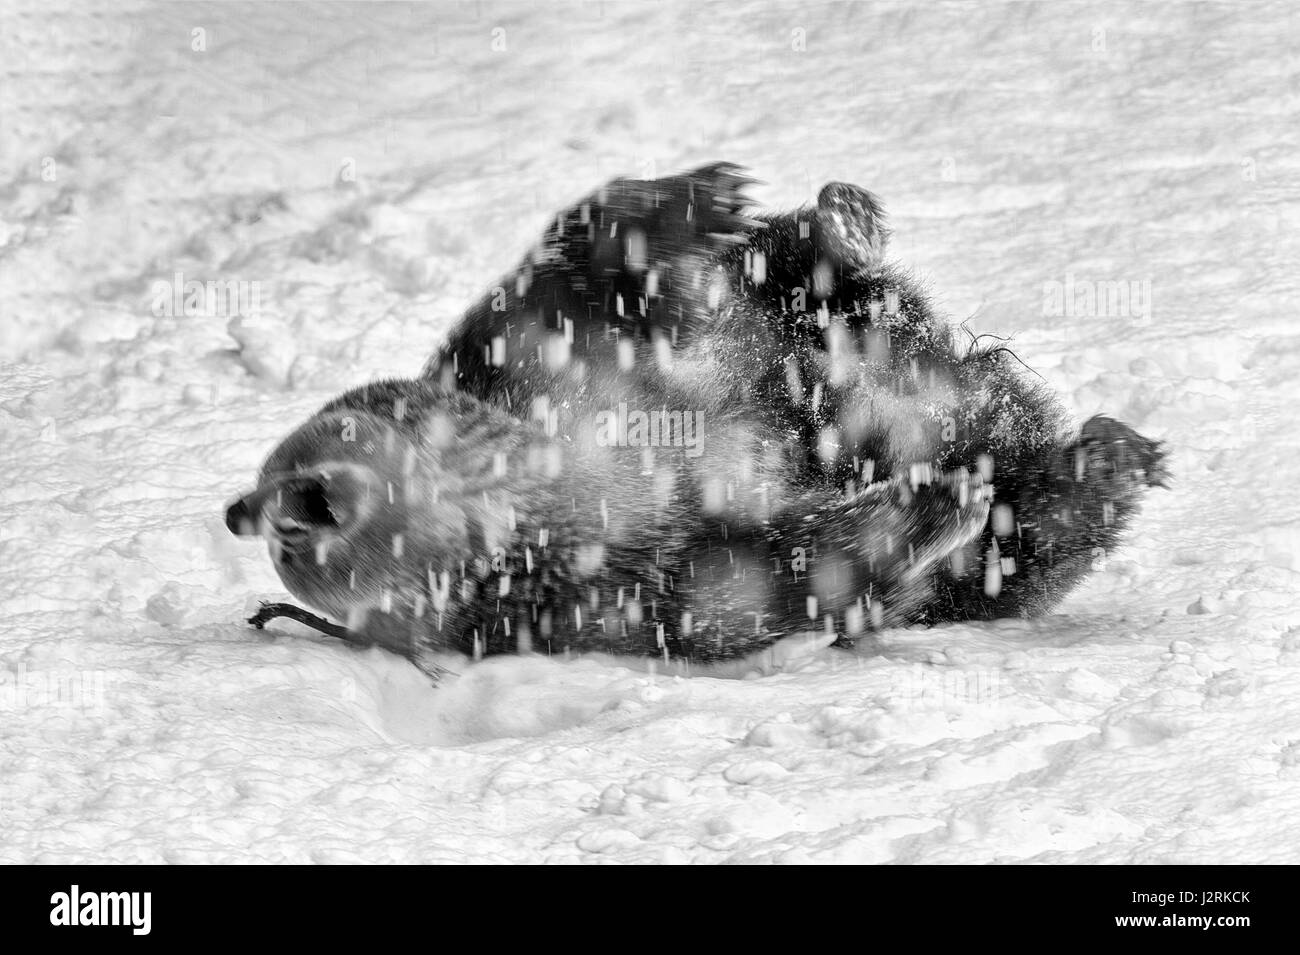 Einzigen weiblichen Erwachsenen eurasischen Braunbären (Ursus Arctos) tummeln sich im Winter Schneesturm. (Bildende Kunst, High-Key, schwarz und weiß) Stockfoto